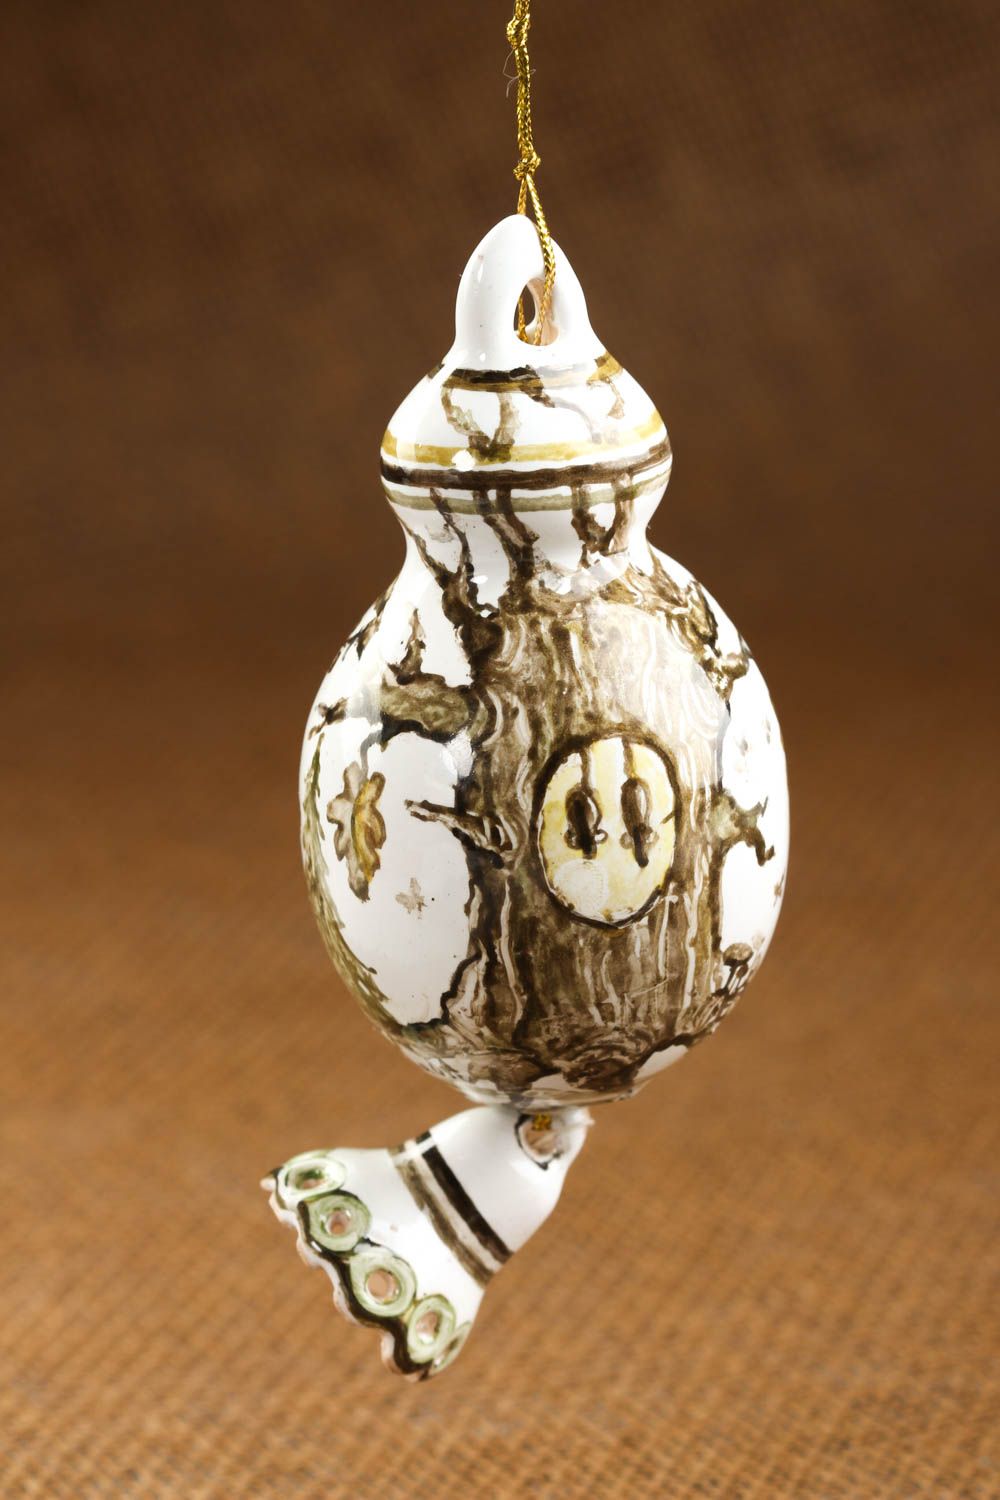 Игрушка из глины ручной работы глиняная игрушка украшение для дома авторское фото 1